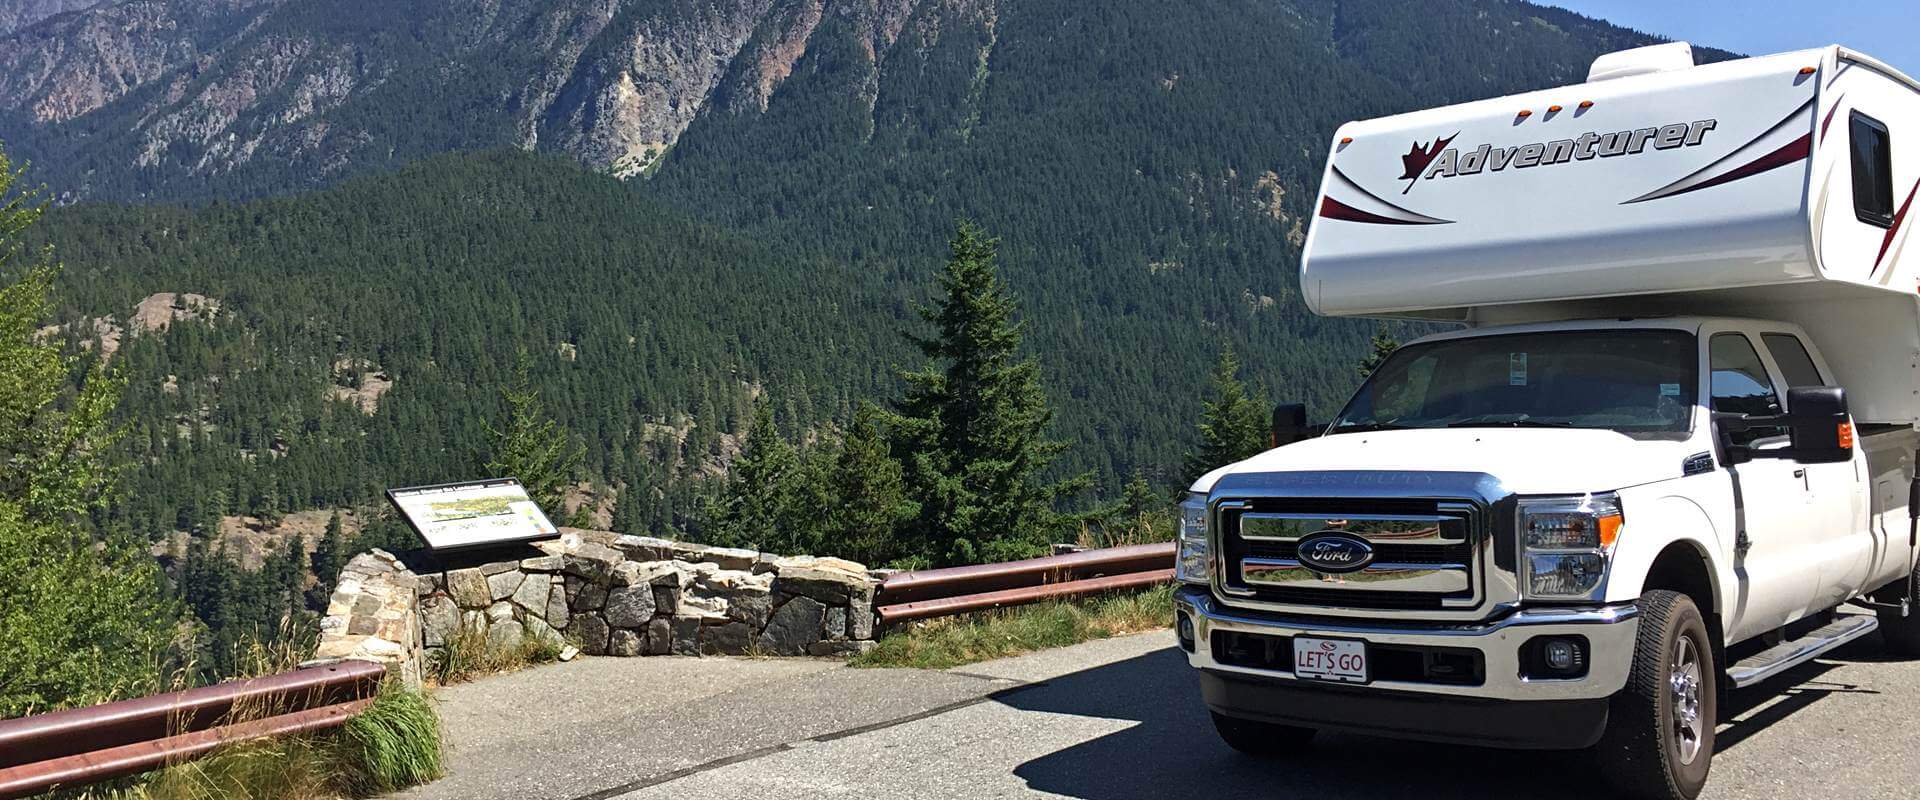 Der Truck Camper für einen Camping-Roadtrip in Kanada oder USA